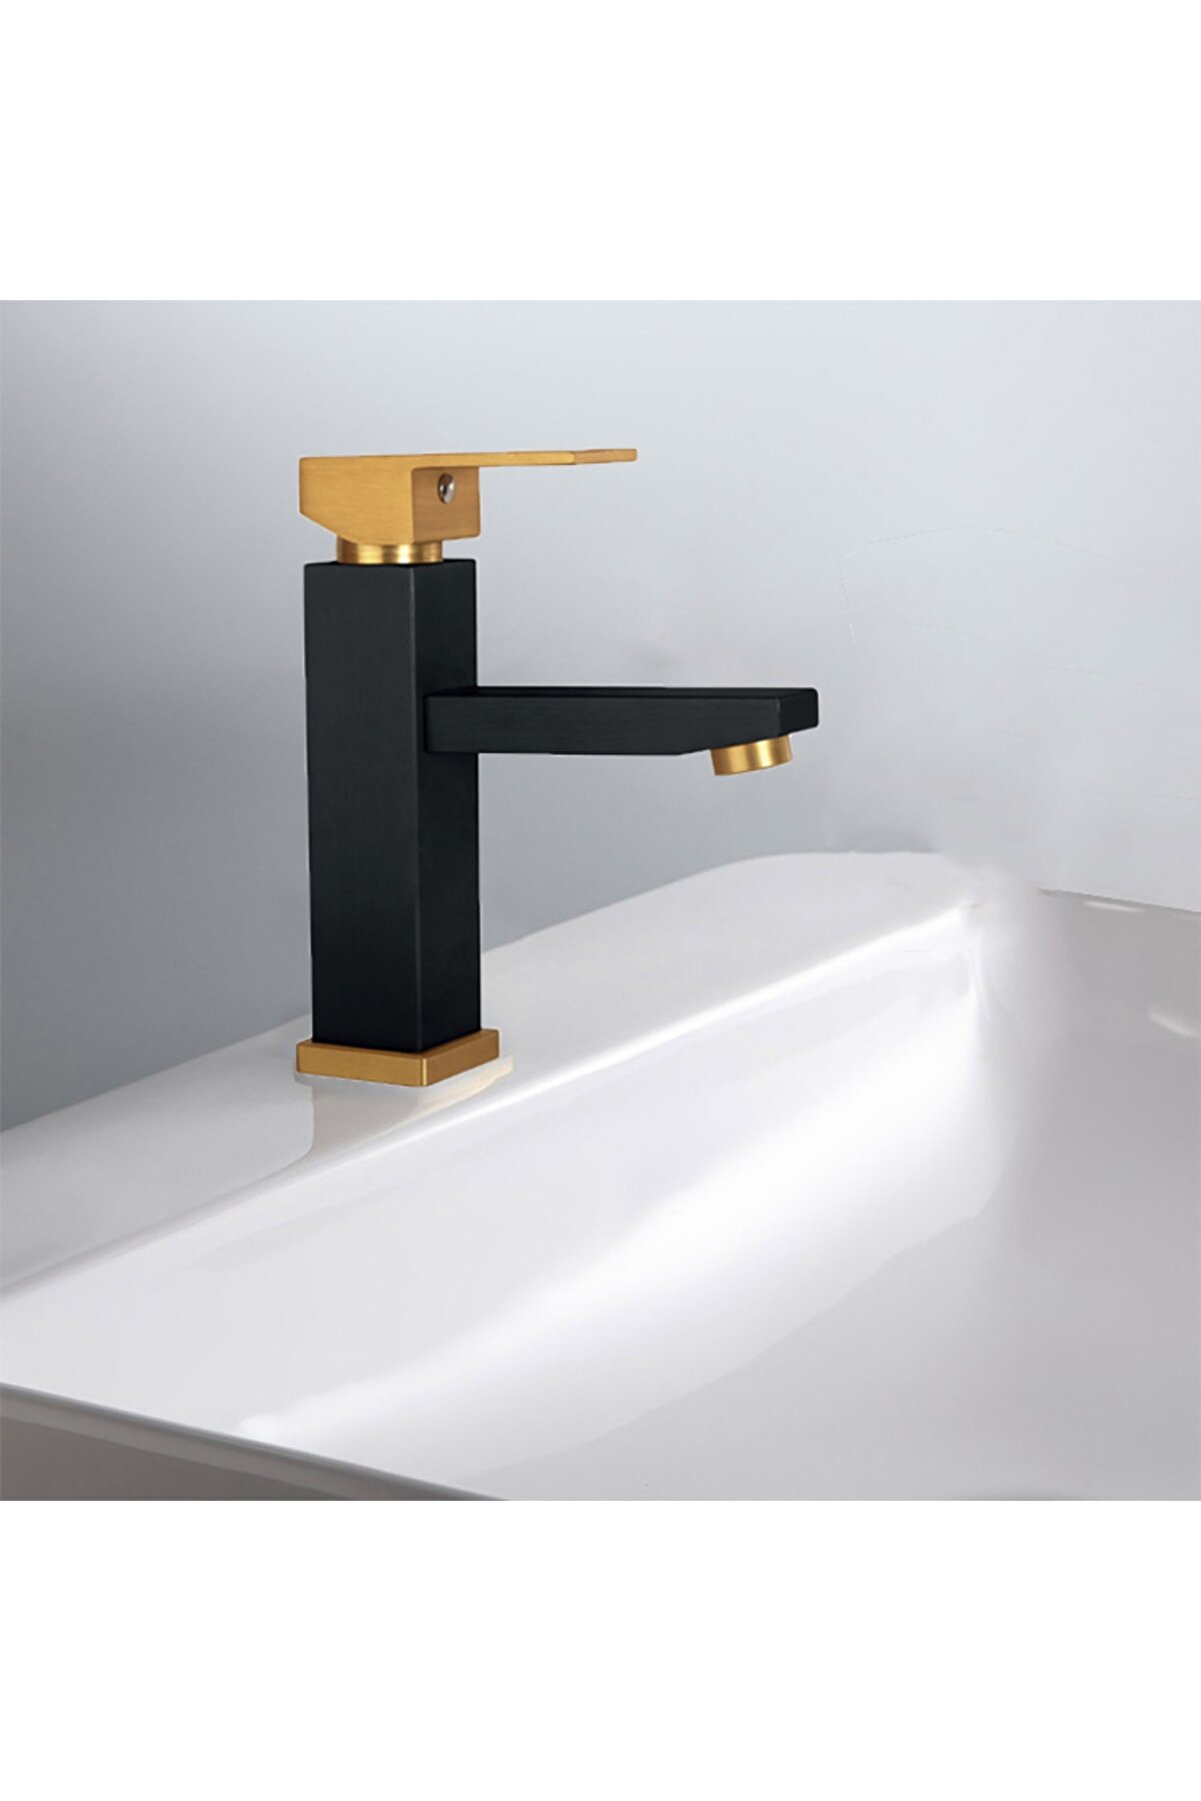 Rudi Gold Black Sink Faucet Square - 602gb RU602GGB